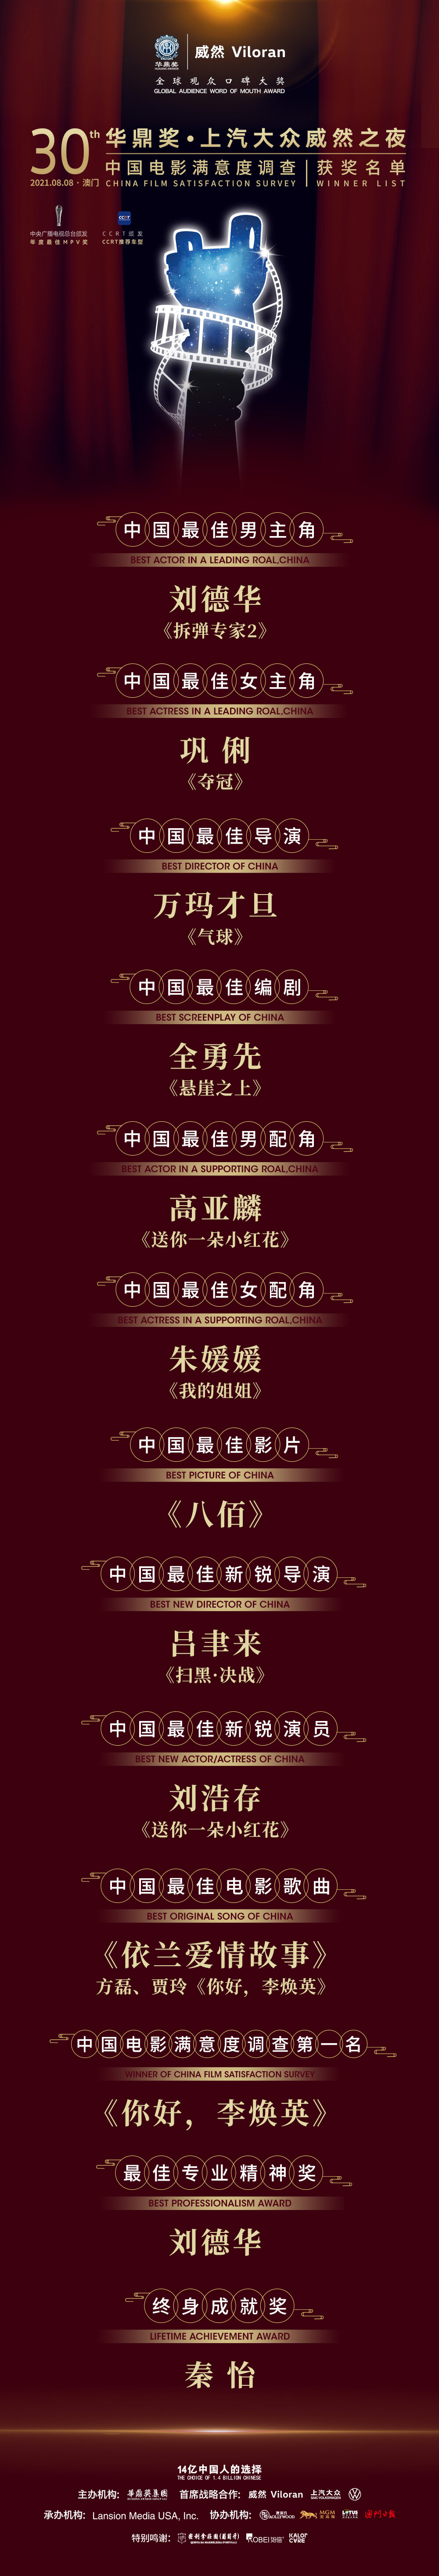 《八佰》获第30届华鼎奖最佳影片 刘德华影帝巩俐影后第2张图片